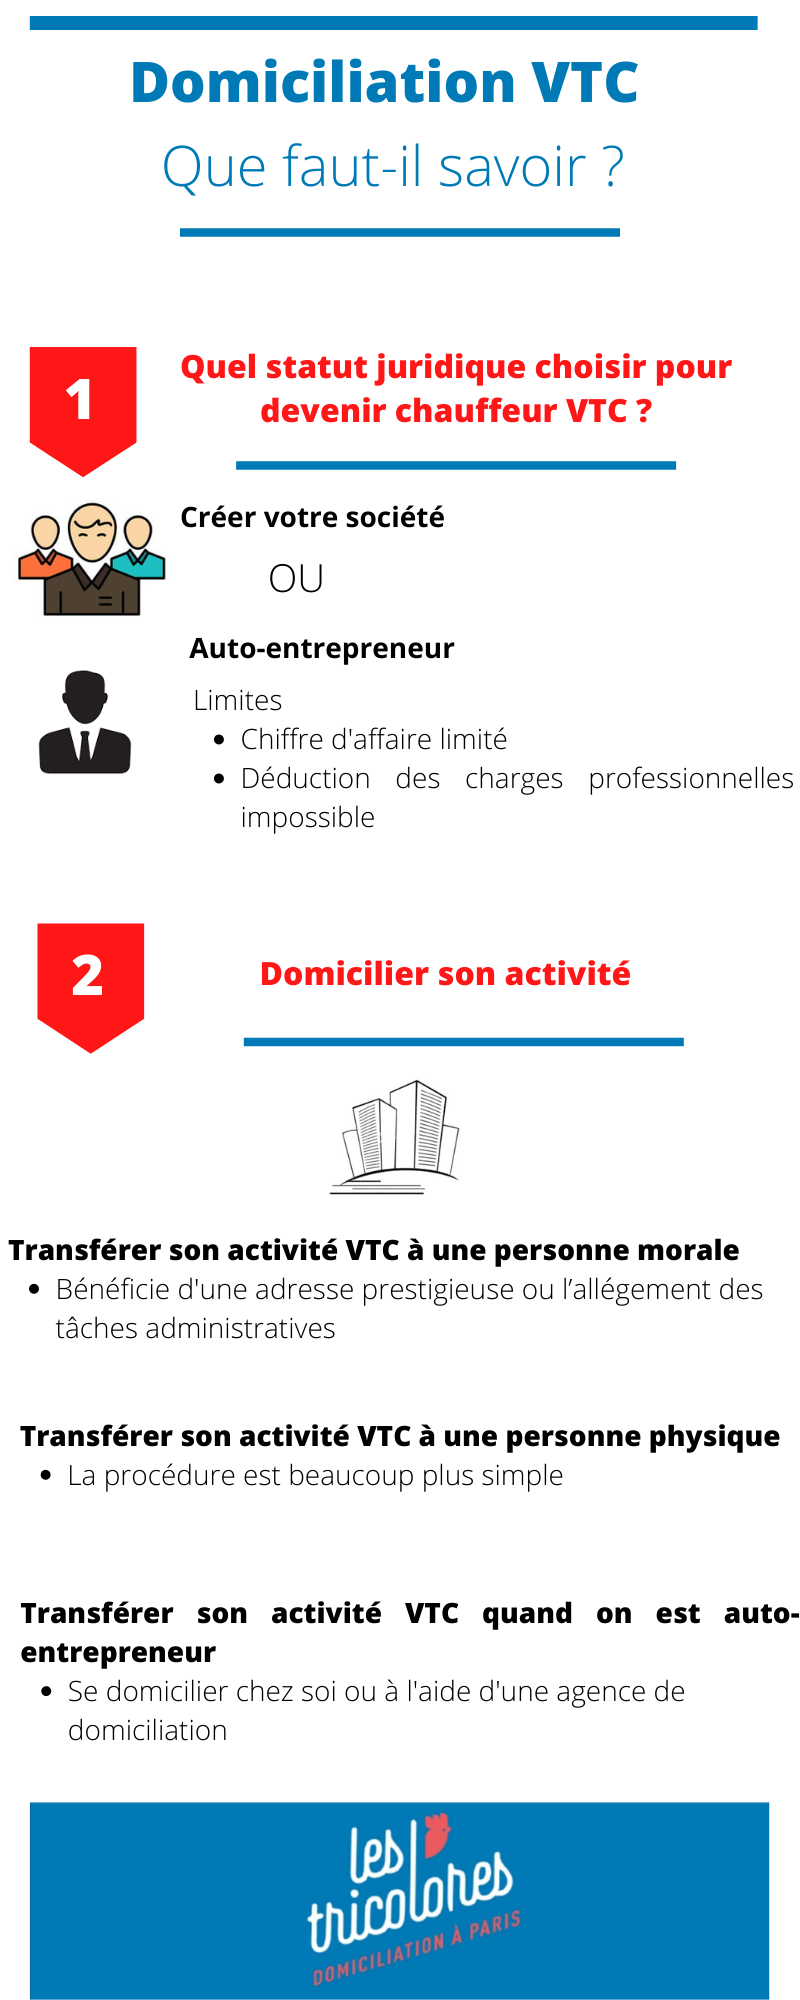 domiciliation VTC : Guide pratique 2021